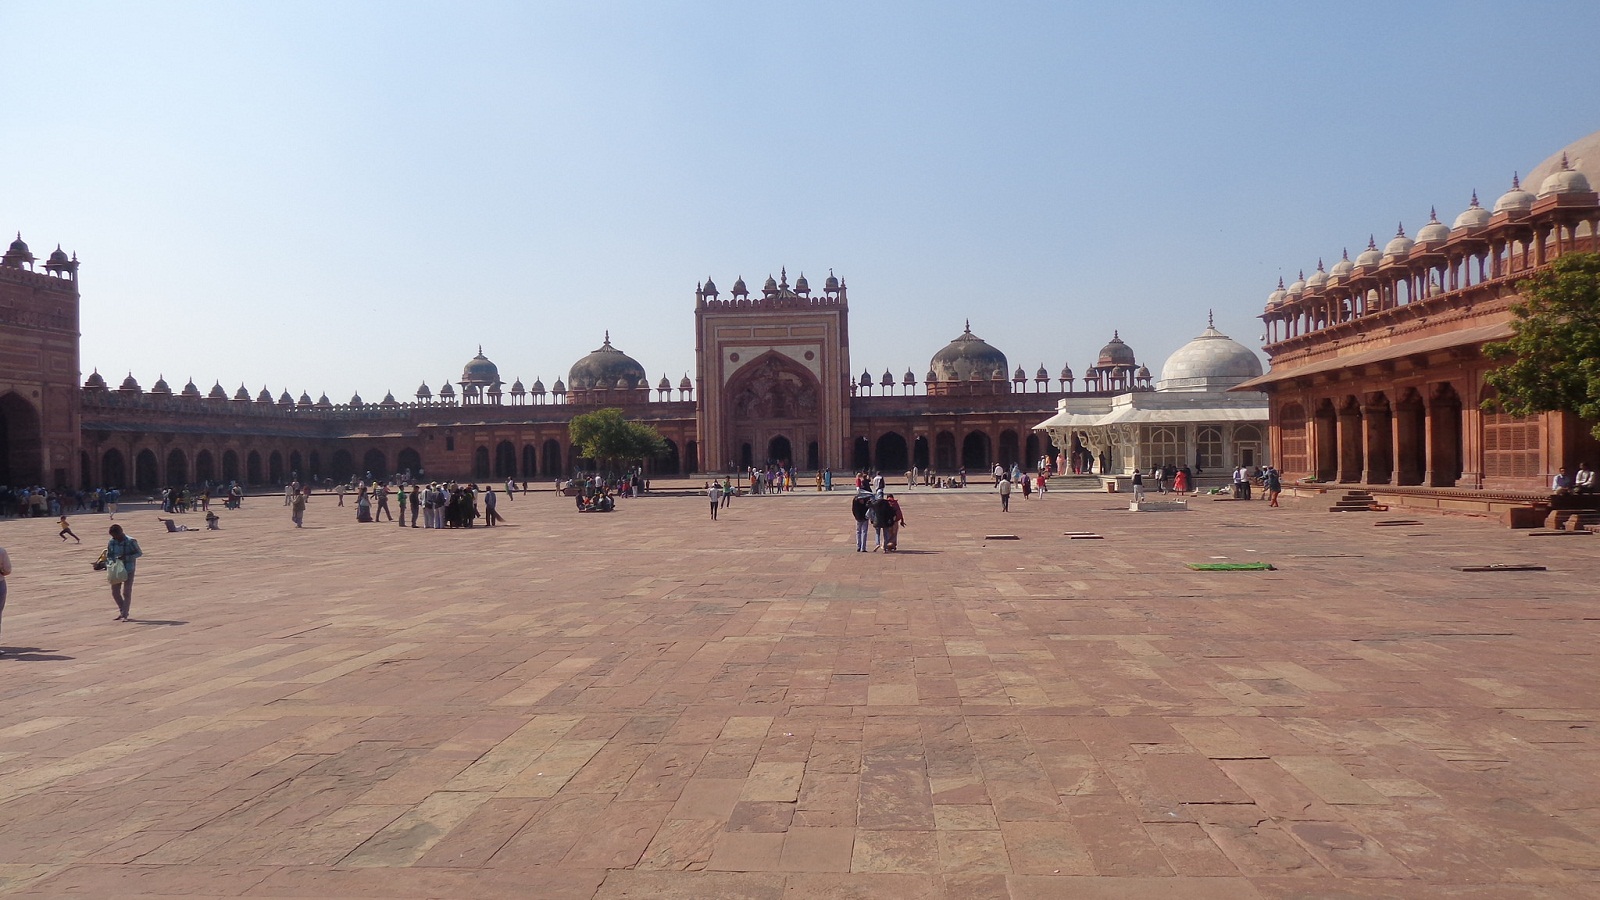 Fatehpur Sikri Heritage Site